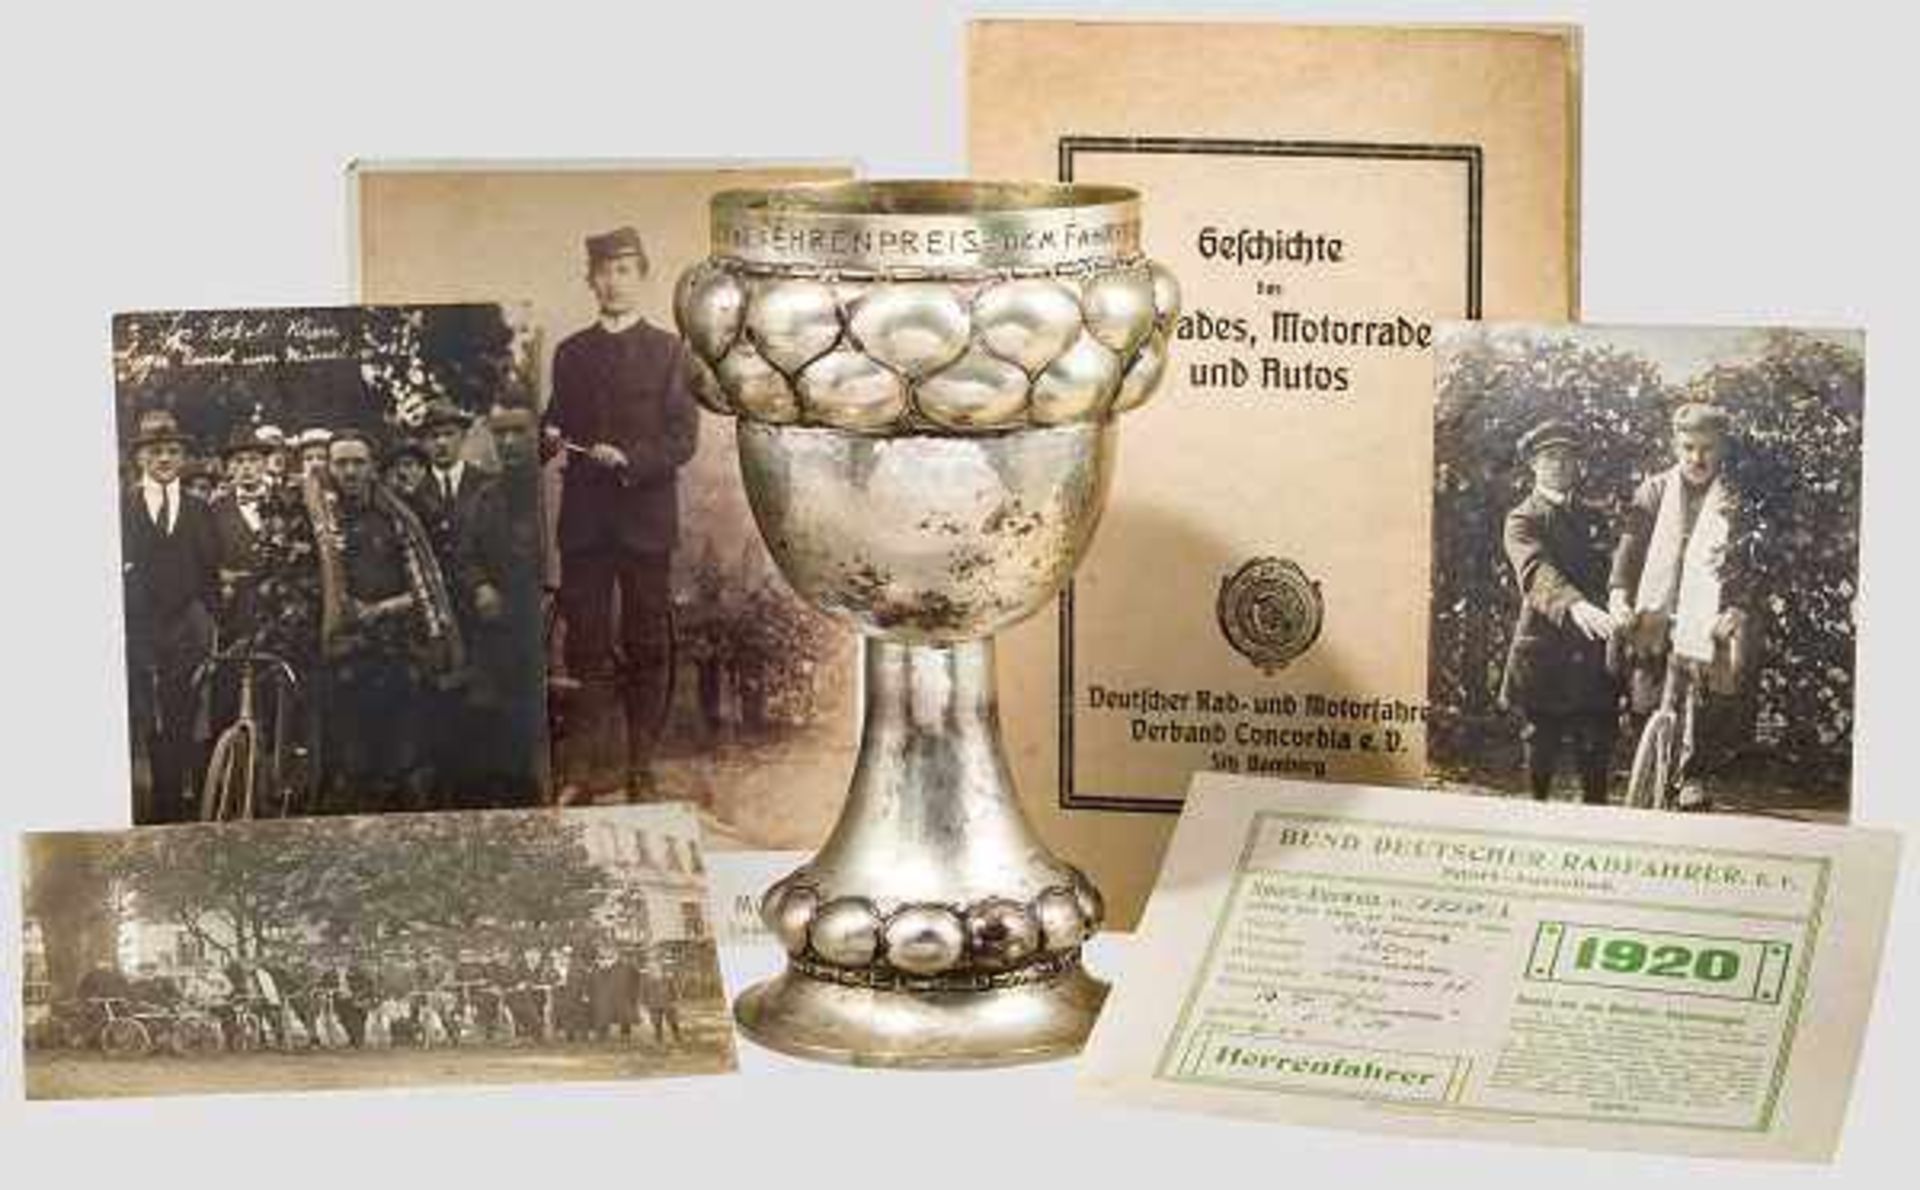 Gruppe Radfahrverein "Schwalben" in München 1924 - Silberpokal, Ausweis, Fotos, drei Abzeichen